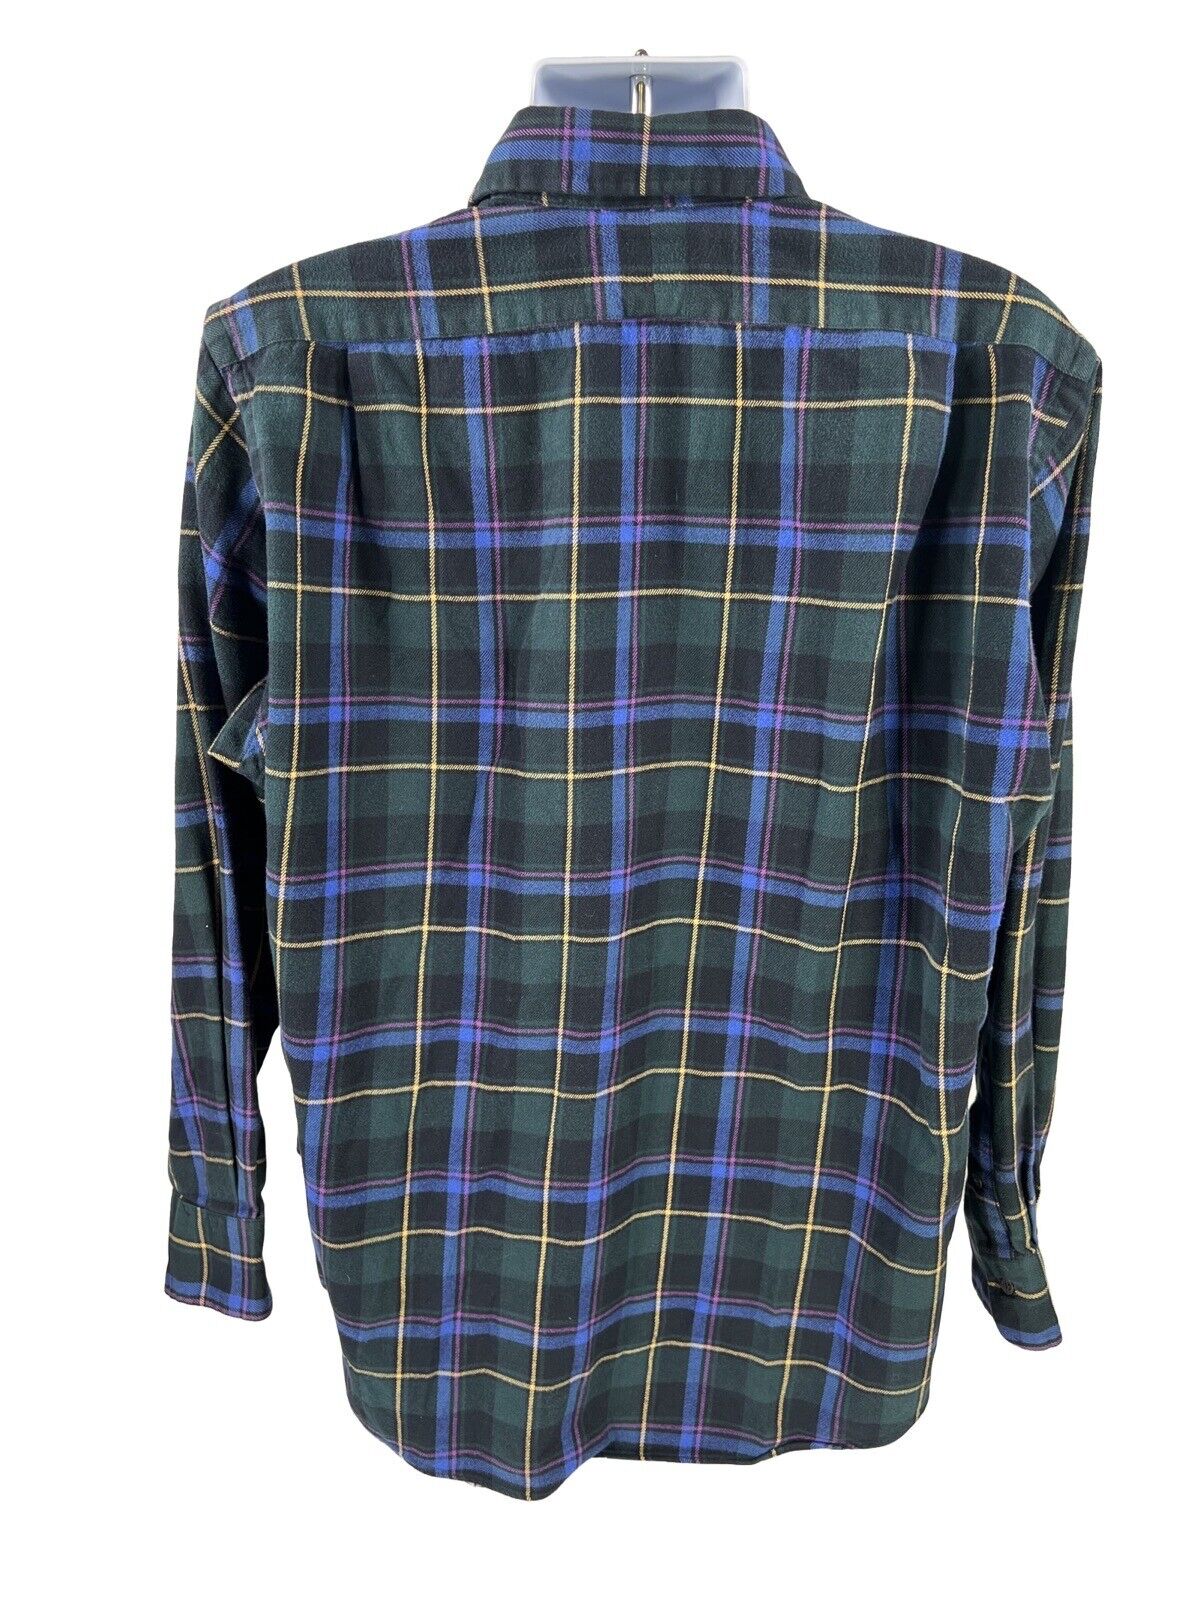 Polo Ralph Lauren Men's Green Plaid Regent Flannel Button Up Shirt - XL